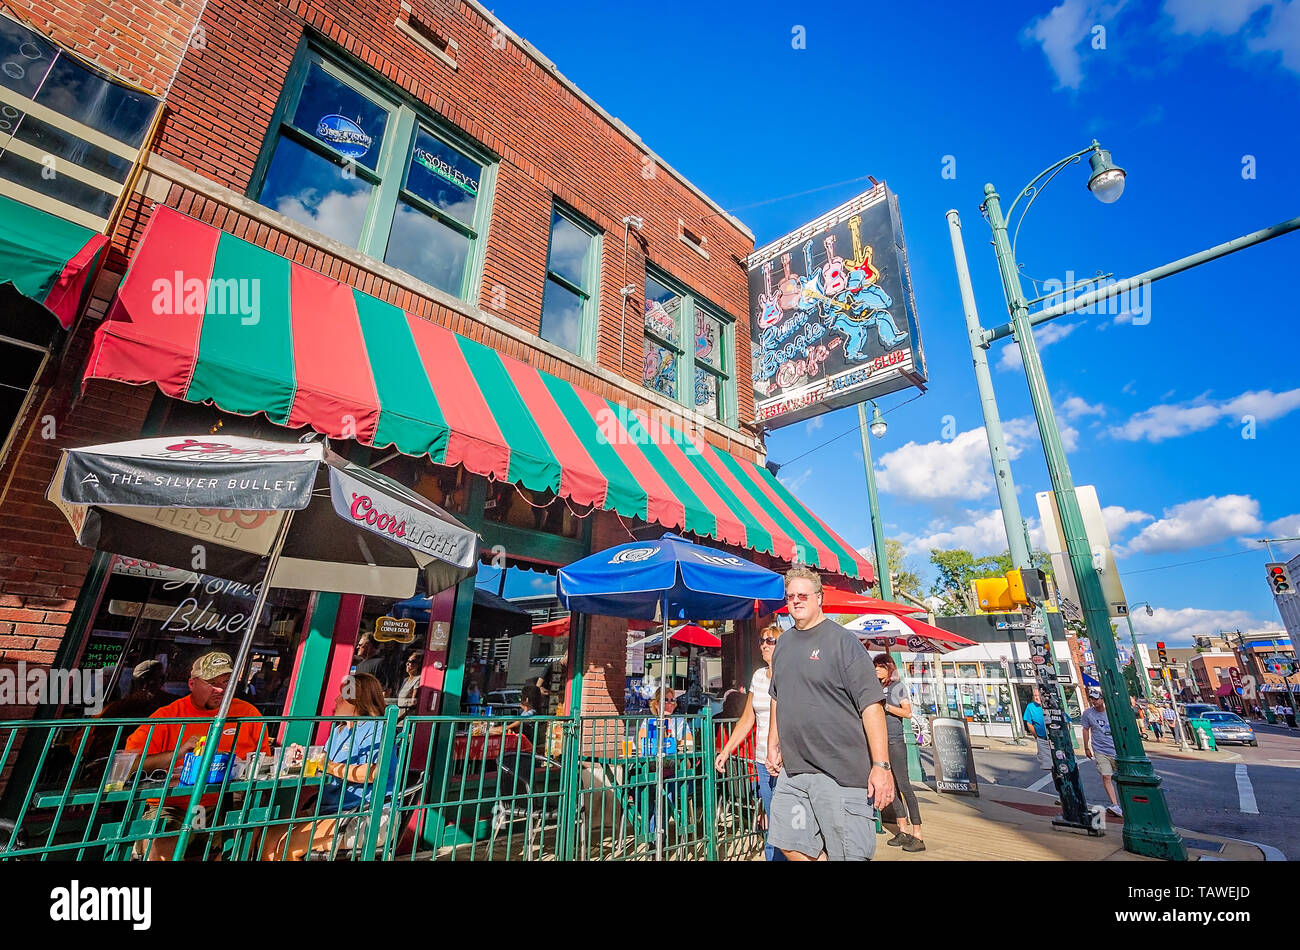 Les touristes se rassemblent à Rum Boogie Café sur Beale Street, le 12 septembre 2015, à Memphis, Tennessee. Beale street a débuté en tant qu'Afro-Américain commerc Banque D'Images